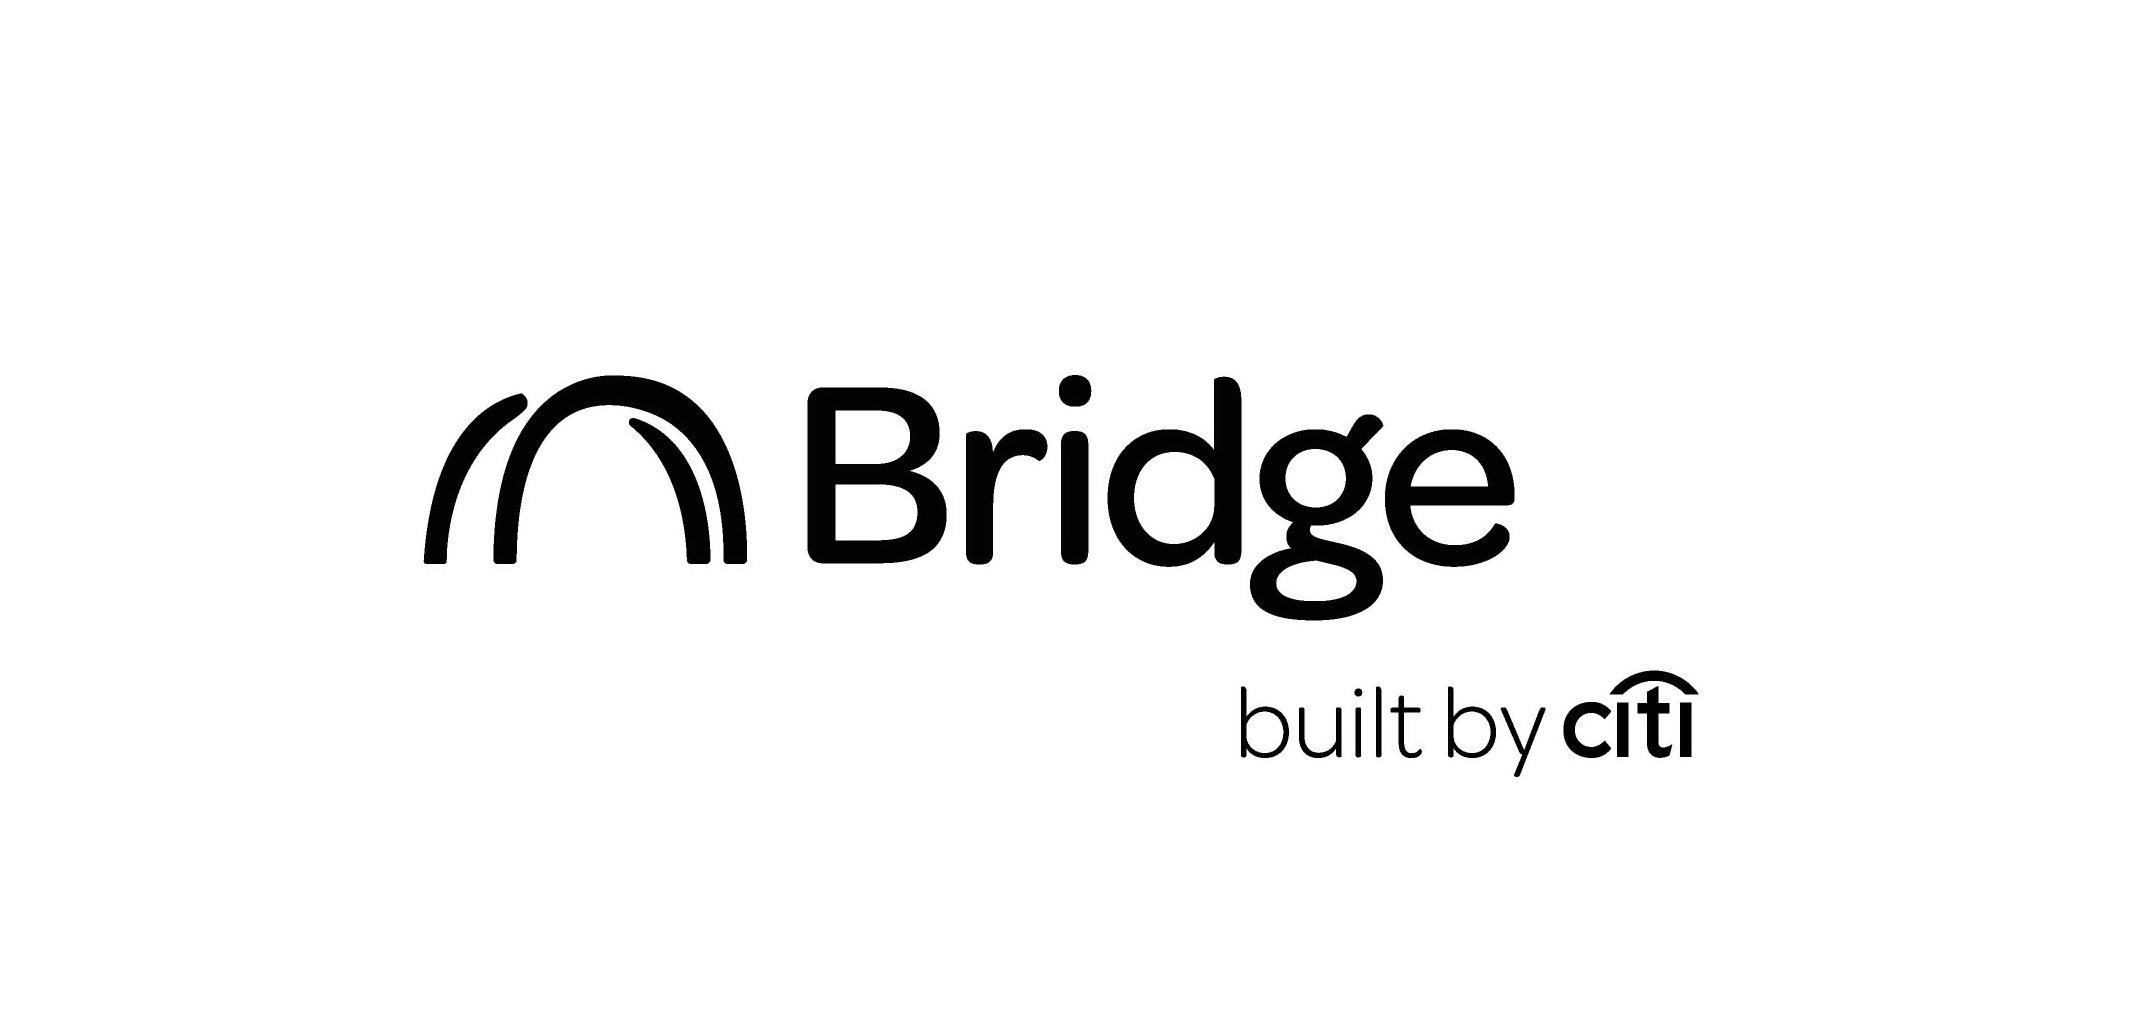  BRIDGE BUILT BY CITI